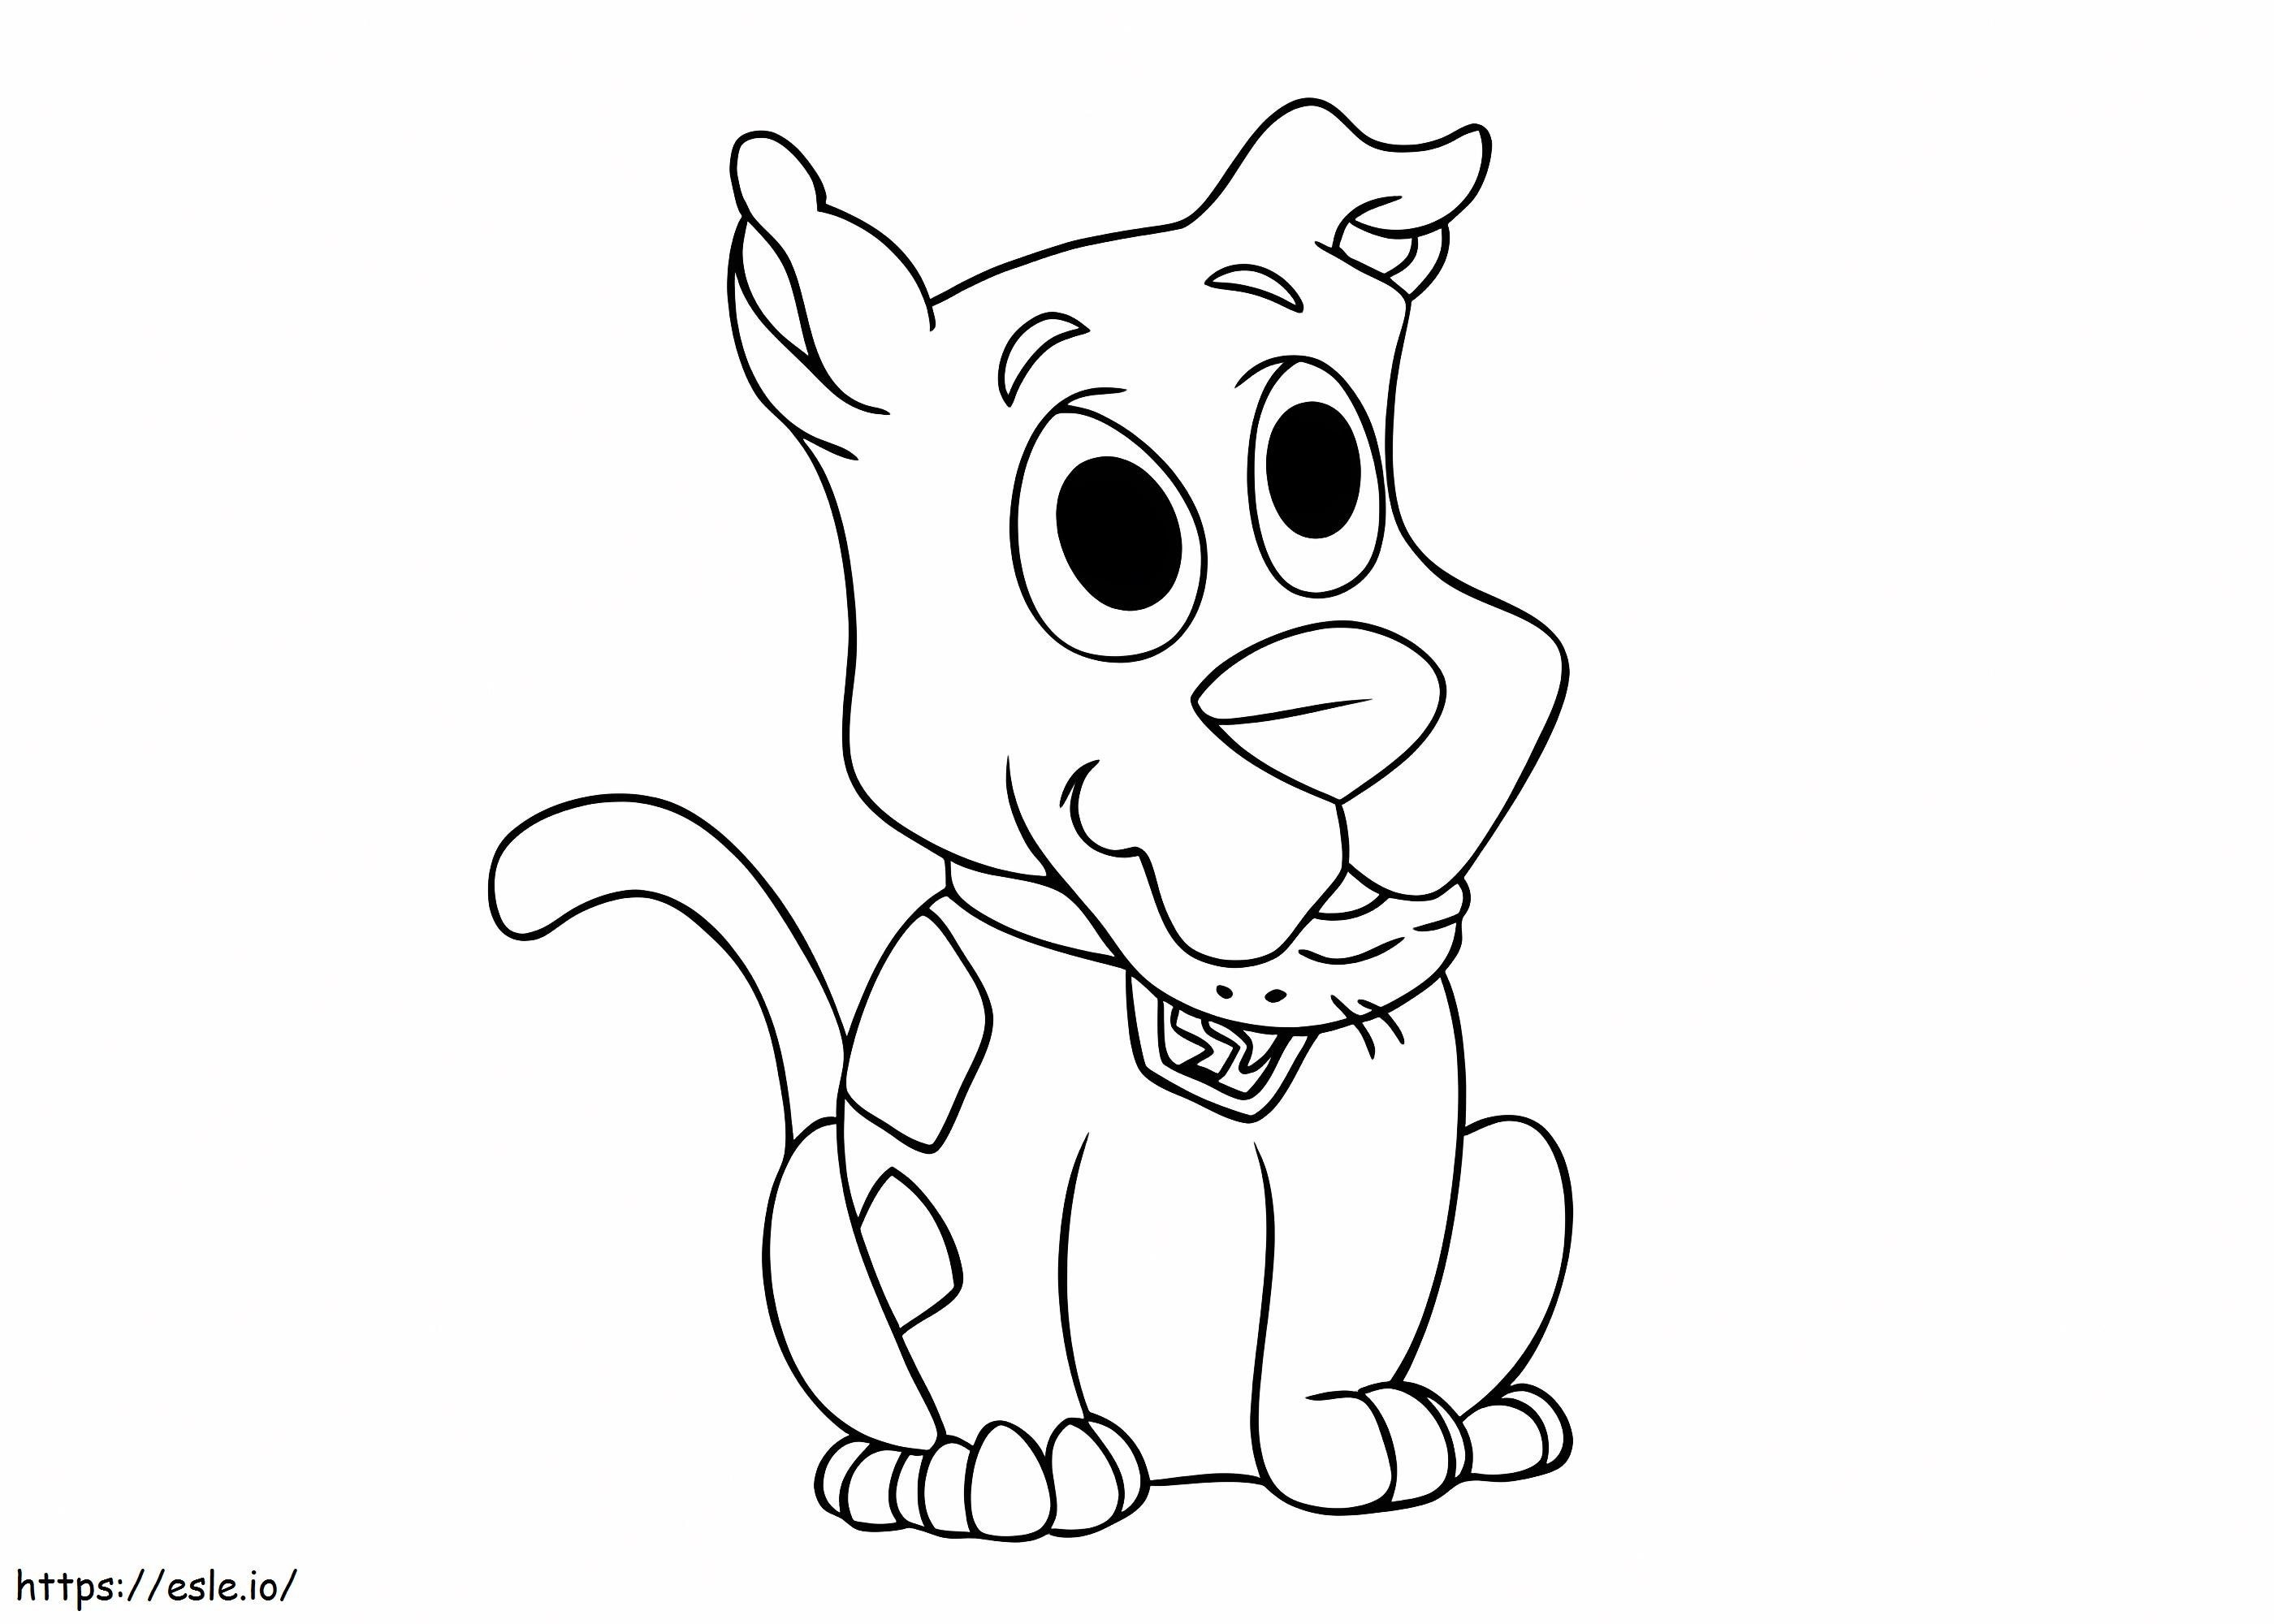 1532427948 Bebê Scooby Doo A4 para colorir